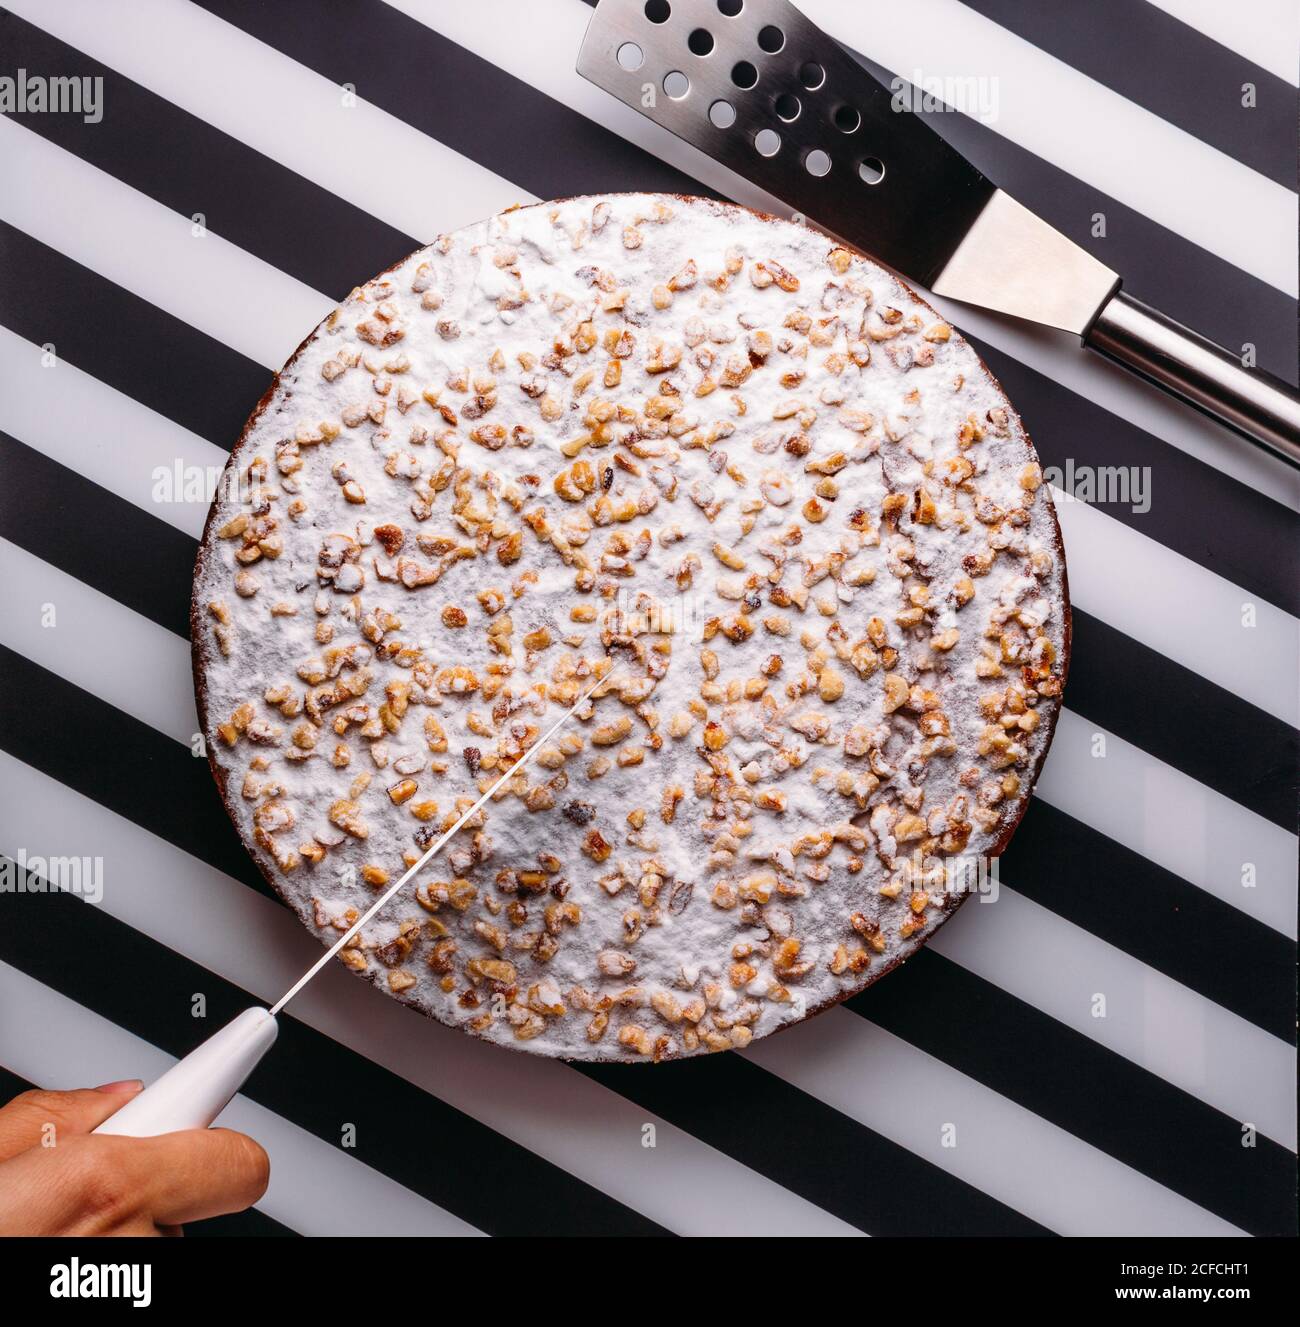 Vista superior de la persona de la cosecha cortando la torta entera con la formación de hielo azúcar y frutos secos en la superficie de rayas negras y blancas Foto de stock